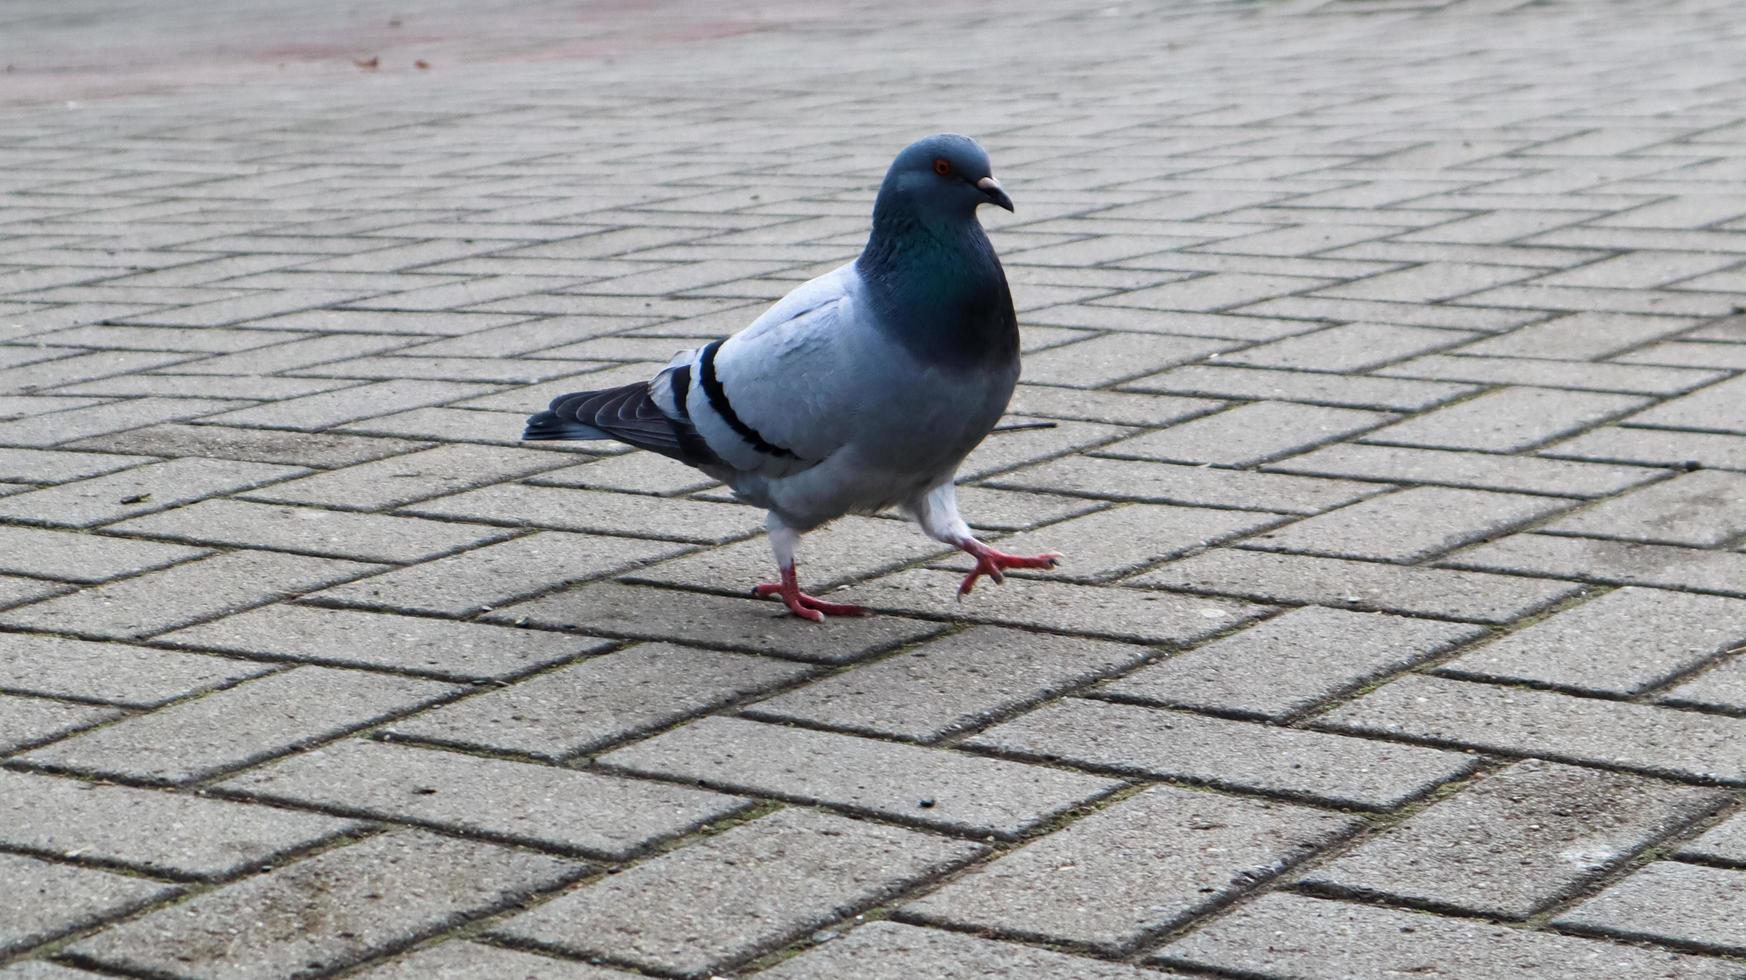 un pigeon sur les dalles. un oiseau sauvage marche sur la place. photo d'une colombe grise solitaire sur fond de dalles de pavage.